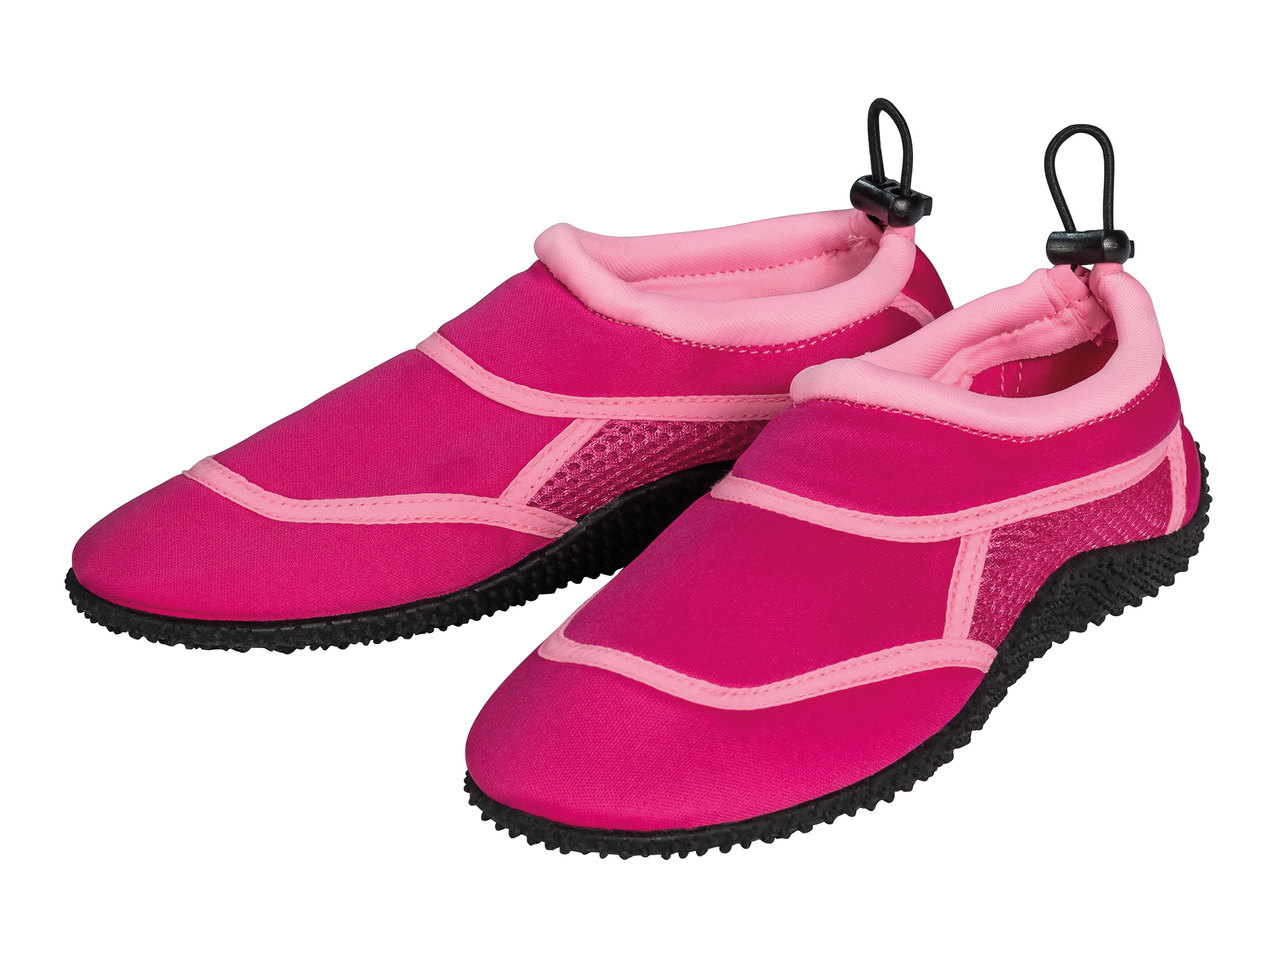 Pepperts Girls' Aqua Shoes1